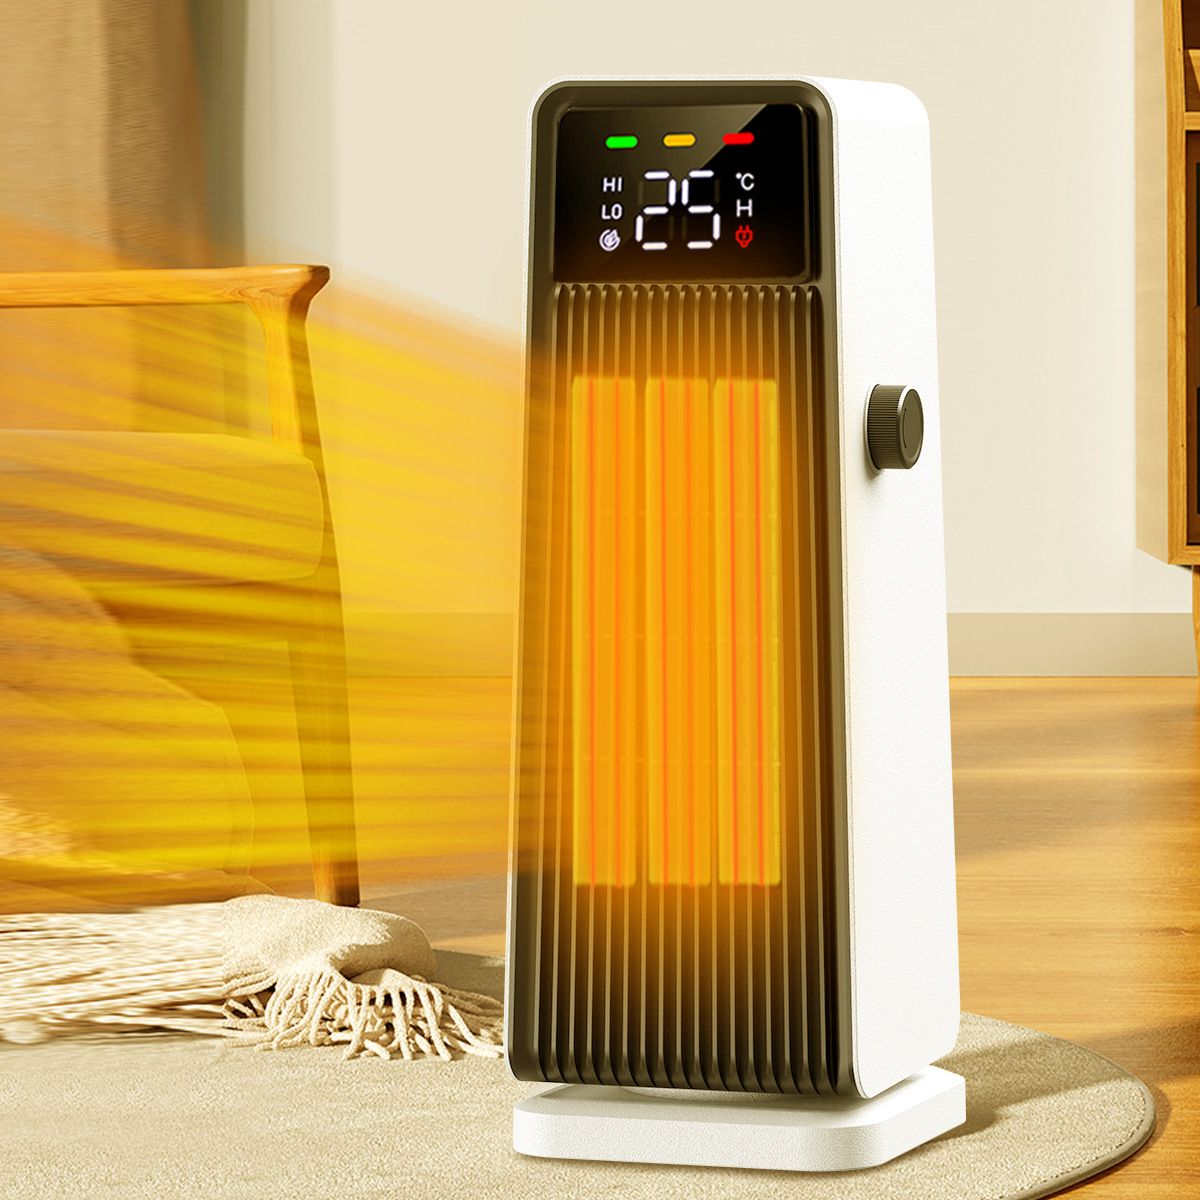 110V暖風機落地式左右搖頭取暖器冷暖家用辦公速熱電暖器美國日本